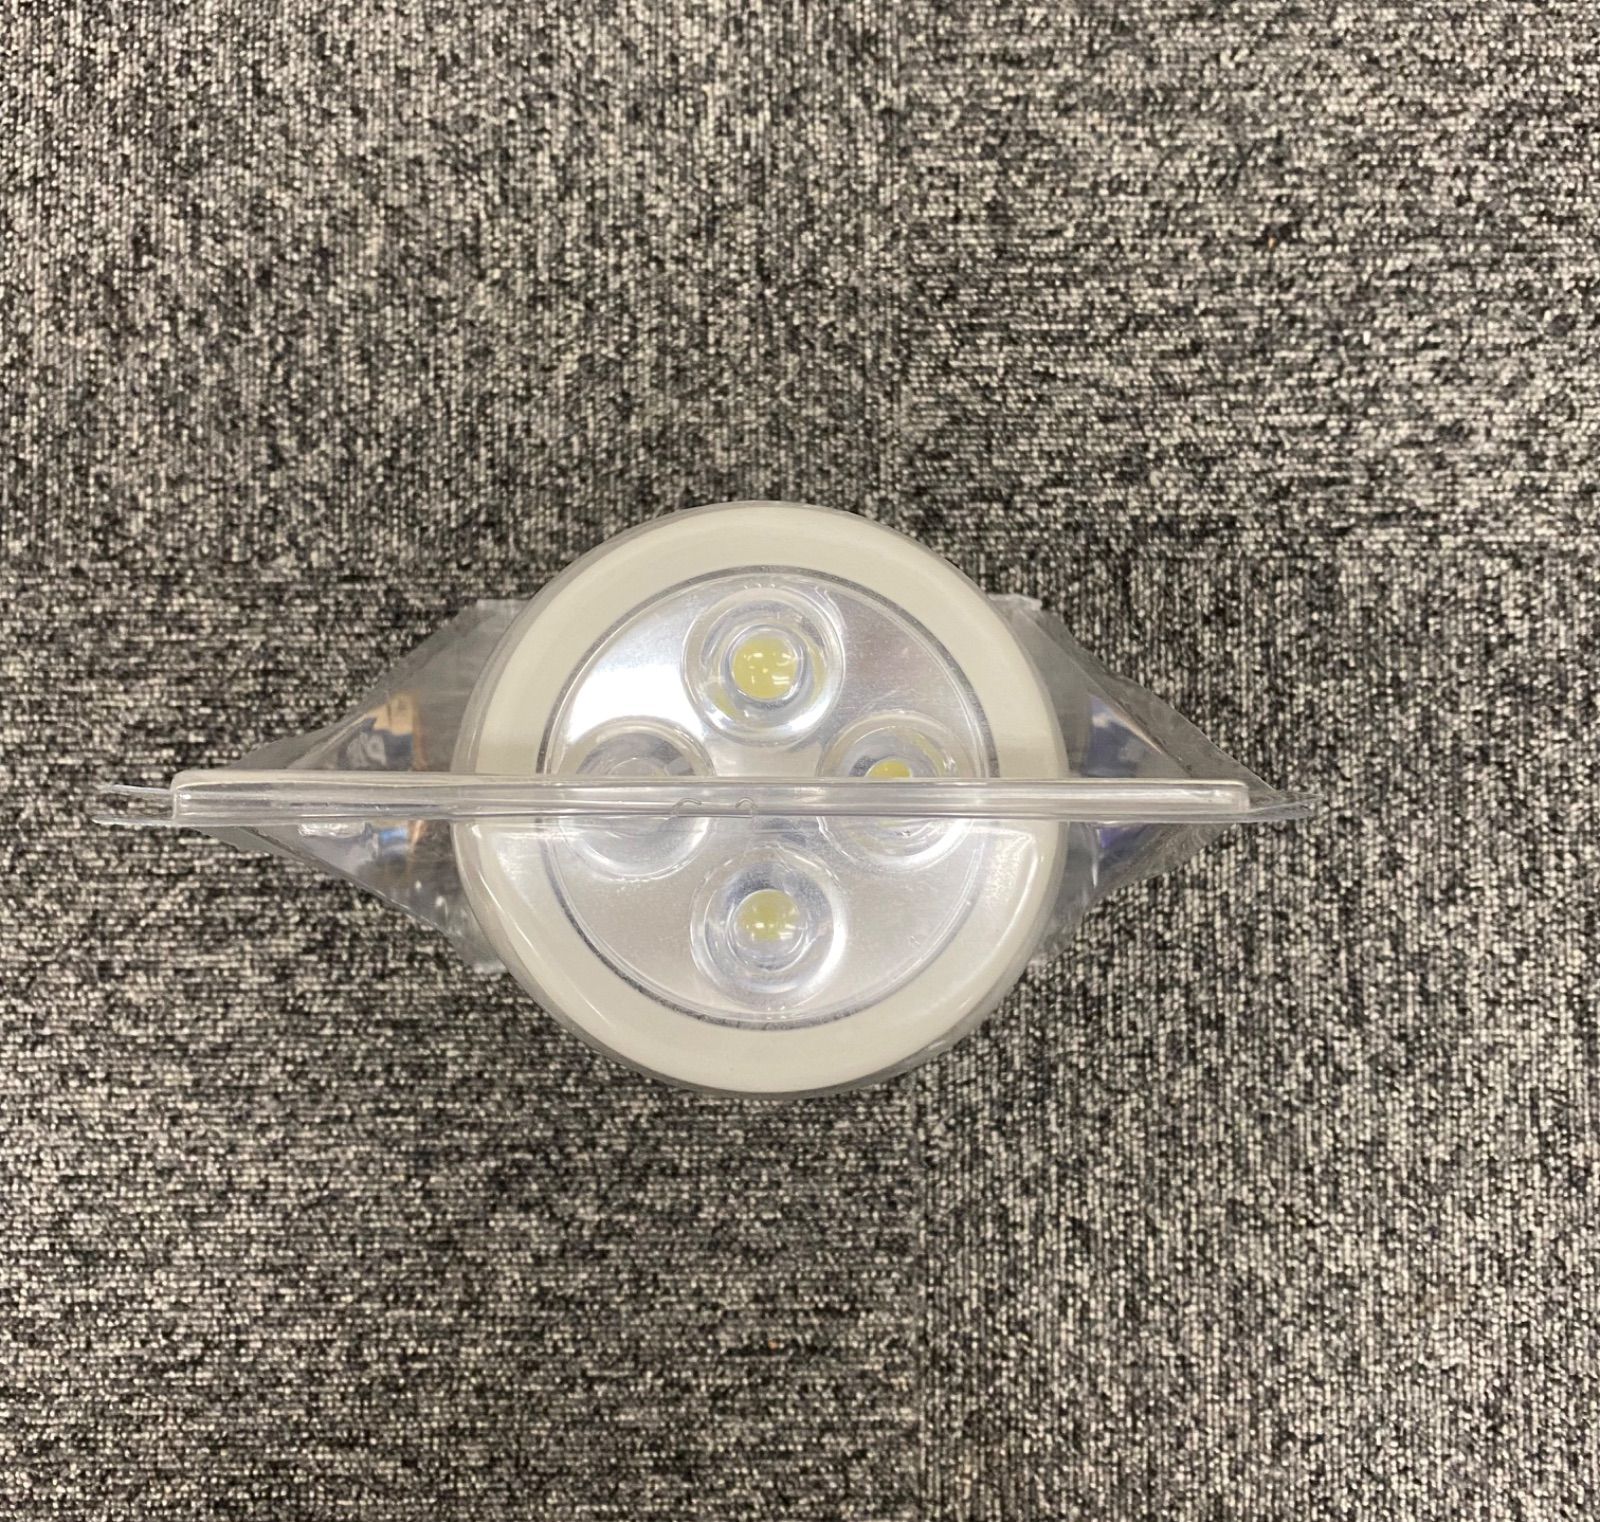 パナソニック LED懐中電灯 強力ライト 乾電池エボルタ付 F-KJWBS01-W